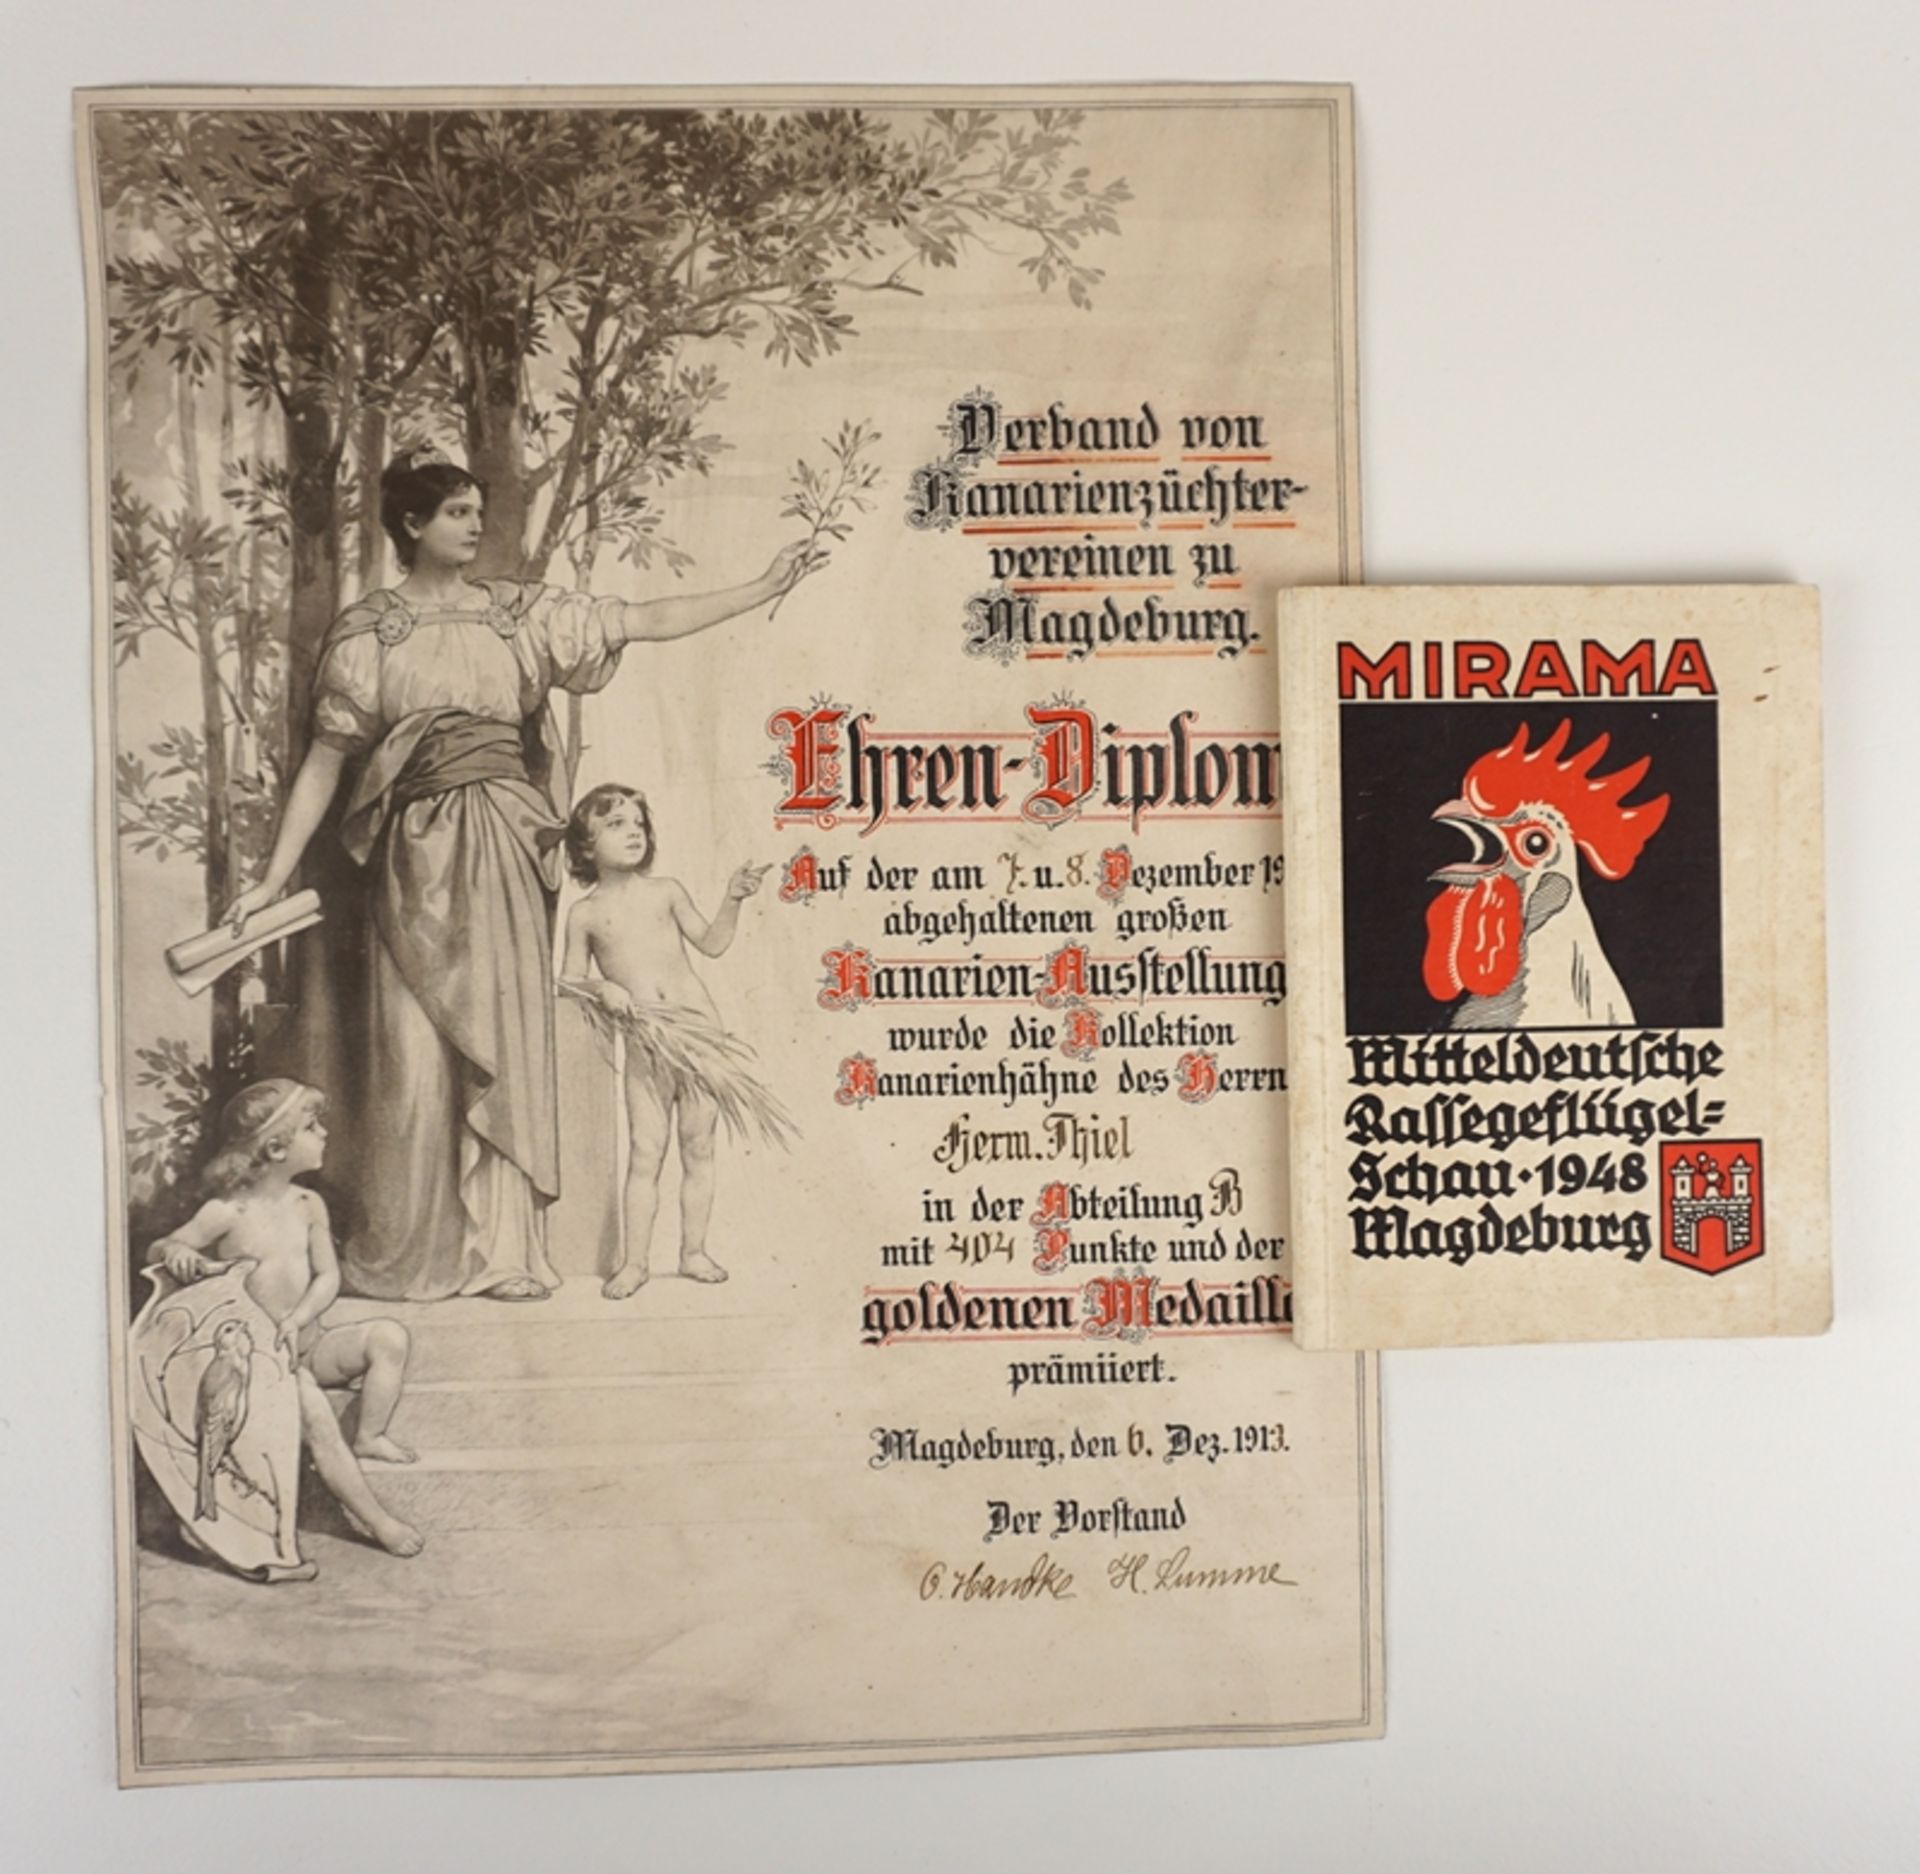 Urkunde "Ehren-Diplom" für Kanarienzüchter, 1913 und MIRAMA Katalog, 1948, Magdeburg